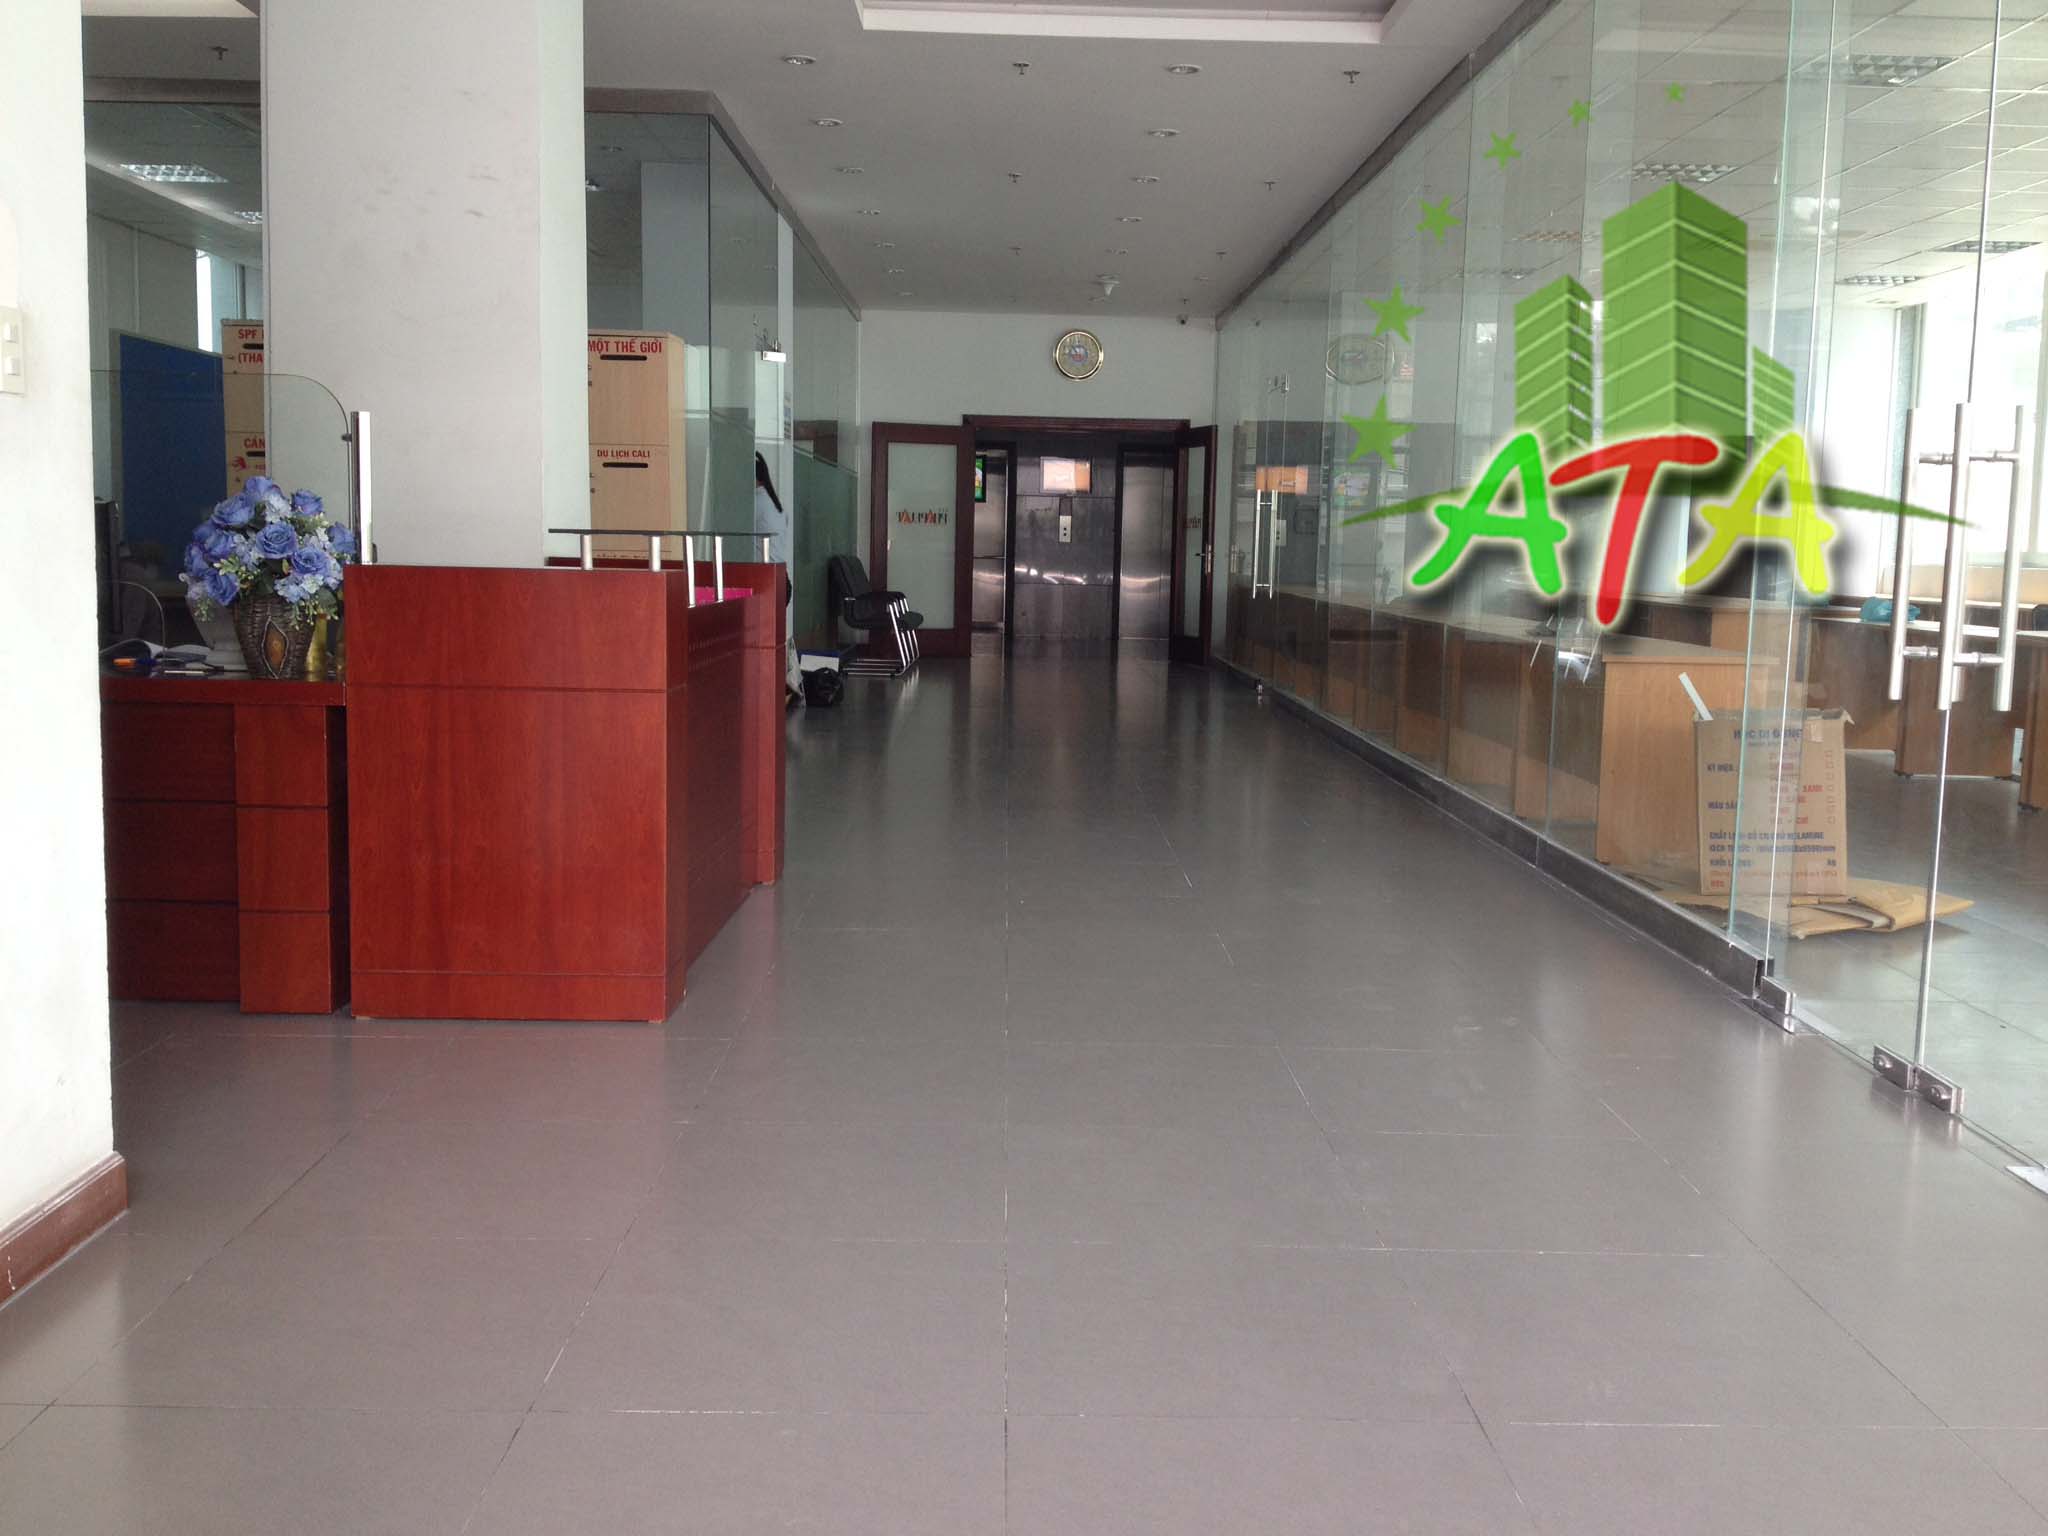 văn phòng cho thuê quận Tân Bình, Tòa nhà báo pháp luật đường Hoàng Việt quận Tân Bình, ngay sân bay Tân Sơn Nhất, office for lease in Tan Son Nhat airport